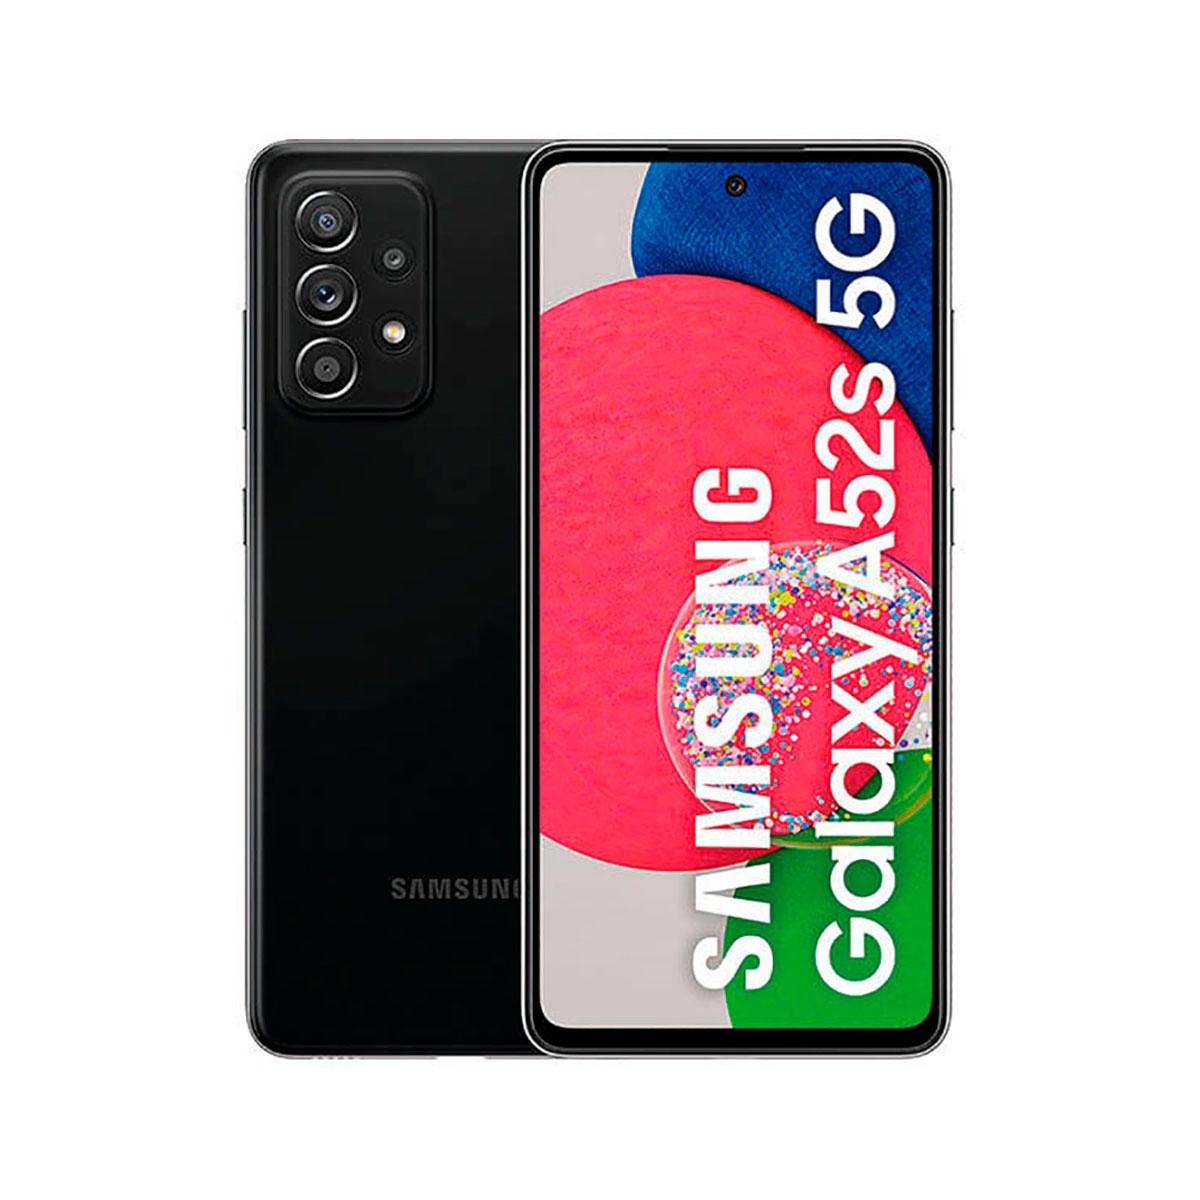 SAMSUNG GALAXY Awesome GB EE 5G Black 128 Dual SIM 128GB BLACK A52S